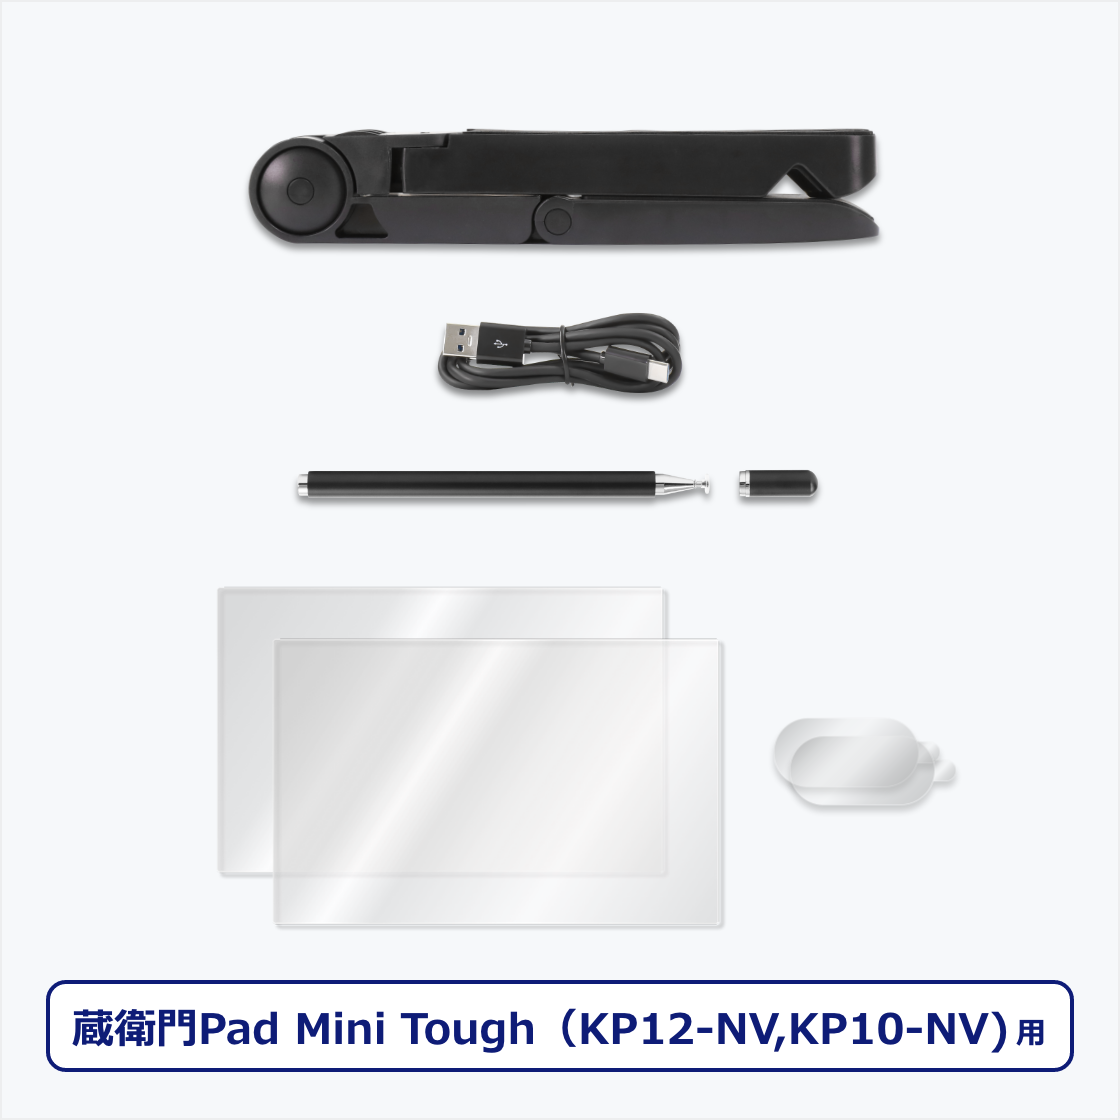 Power Kit for qPad Mini ToughiKP12-NVj